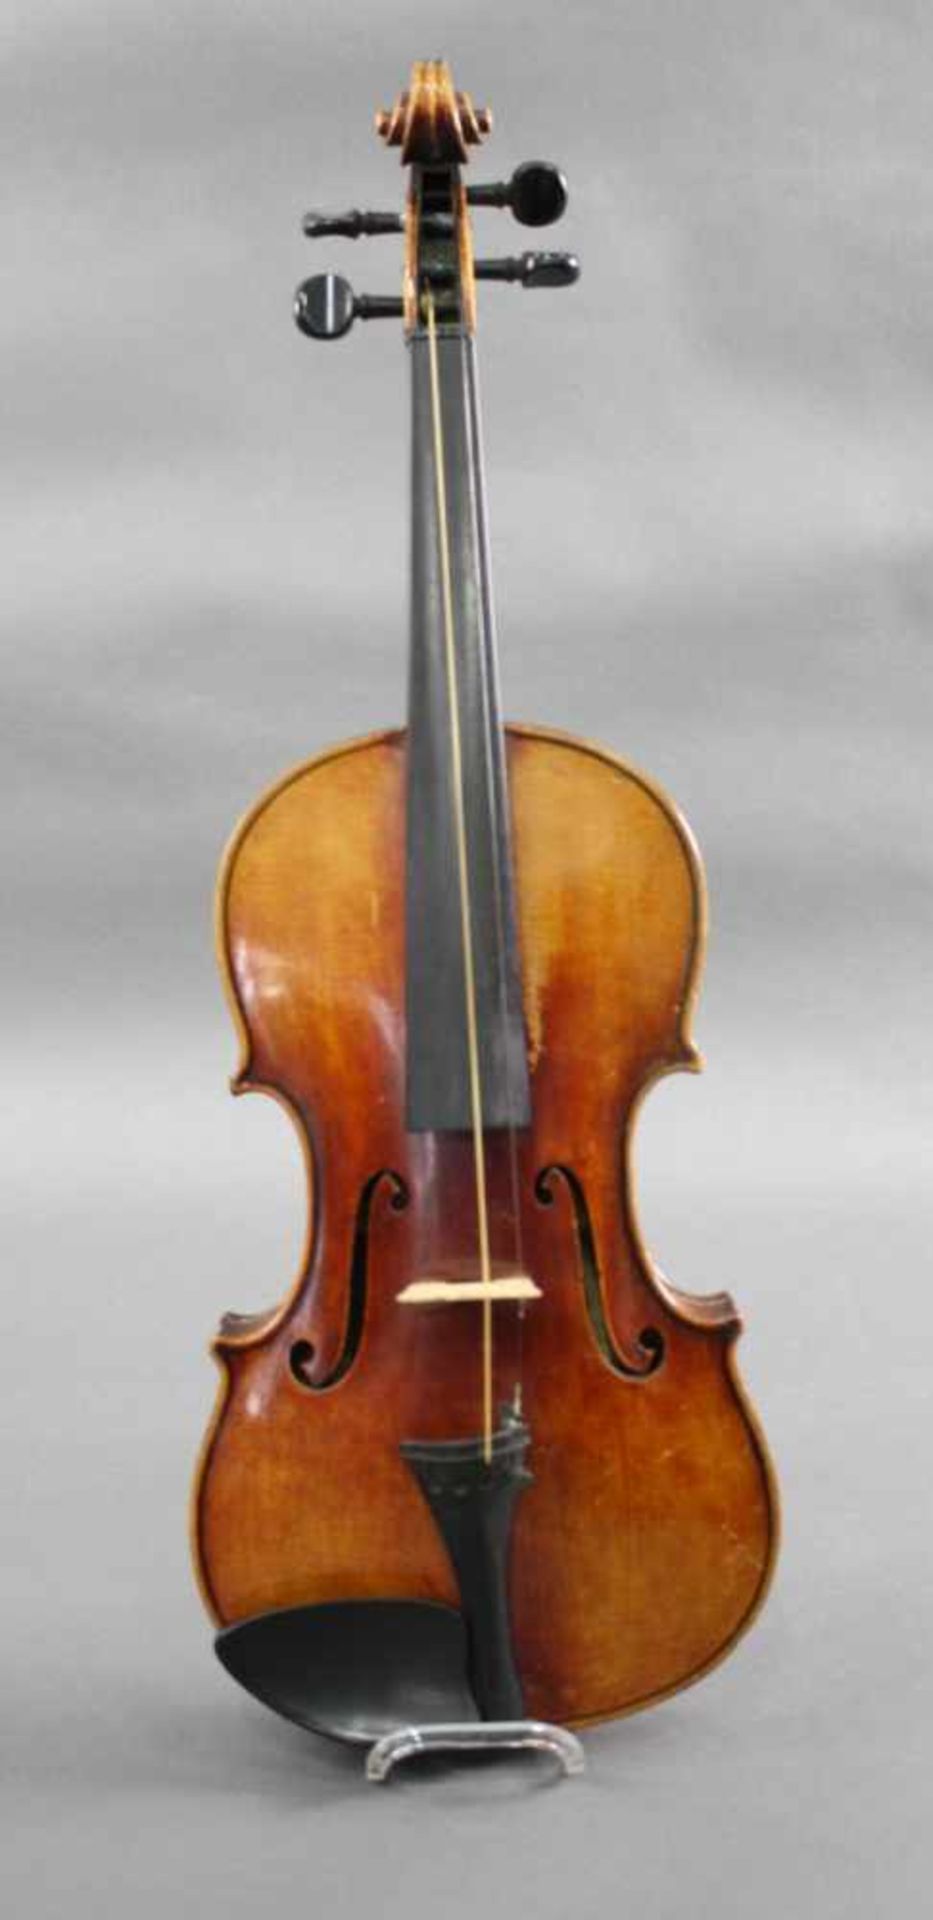 Violine nach Joseph Guarnerius fecit Cremona anno 1725 IHSDiese Geige wurde nach dem Modell von